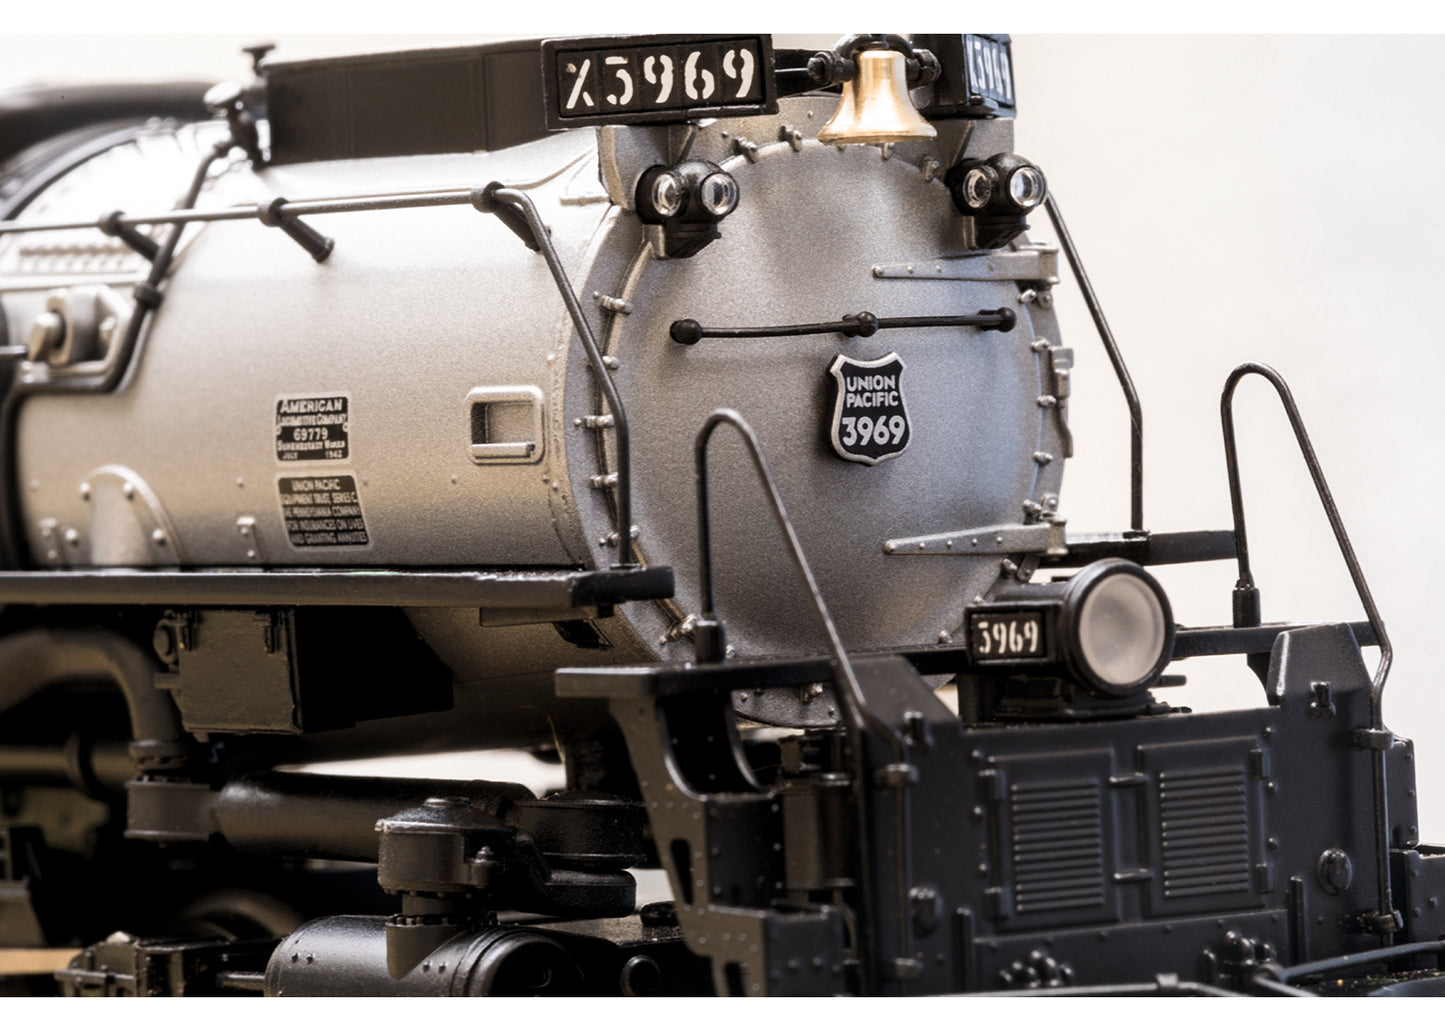 Trix 22940 - Class 3900 Steam Locomotive Challenger